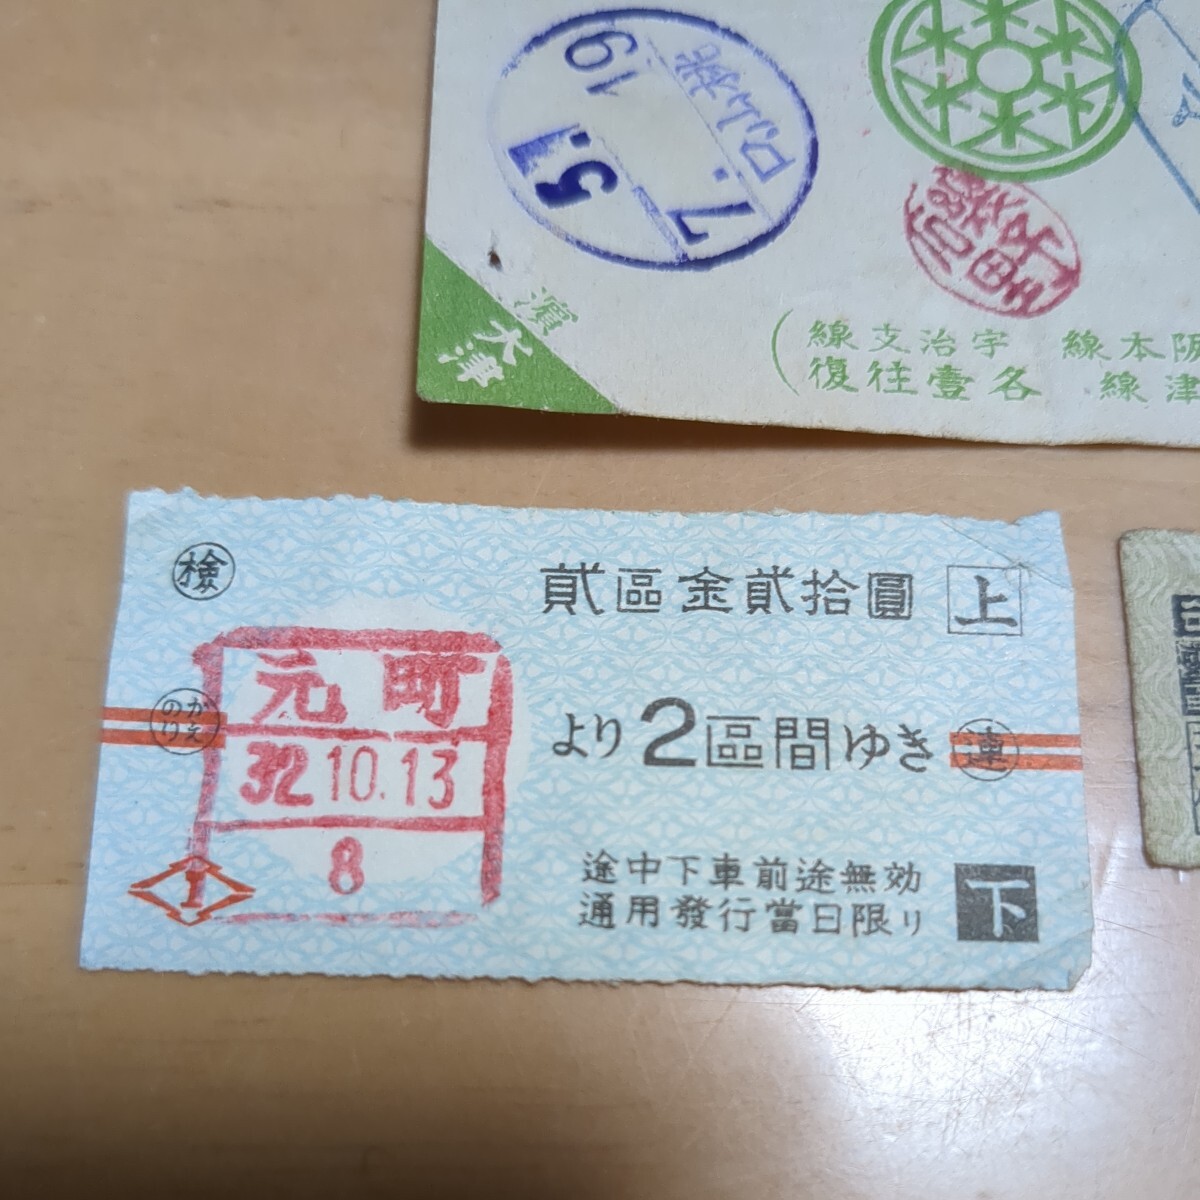  железная дорога . талон столица . электро- . фирма участник семья для битва передний пассажирский билет билет Showa первый период старый билет суммировать ⑨